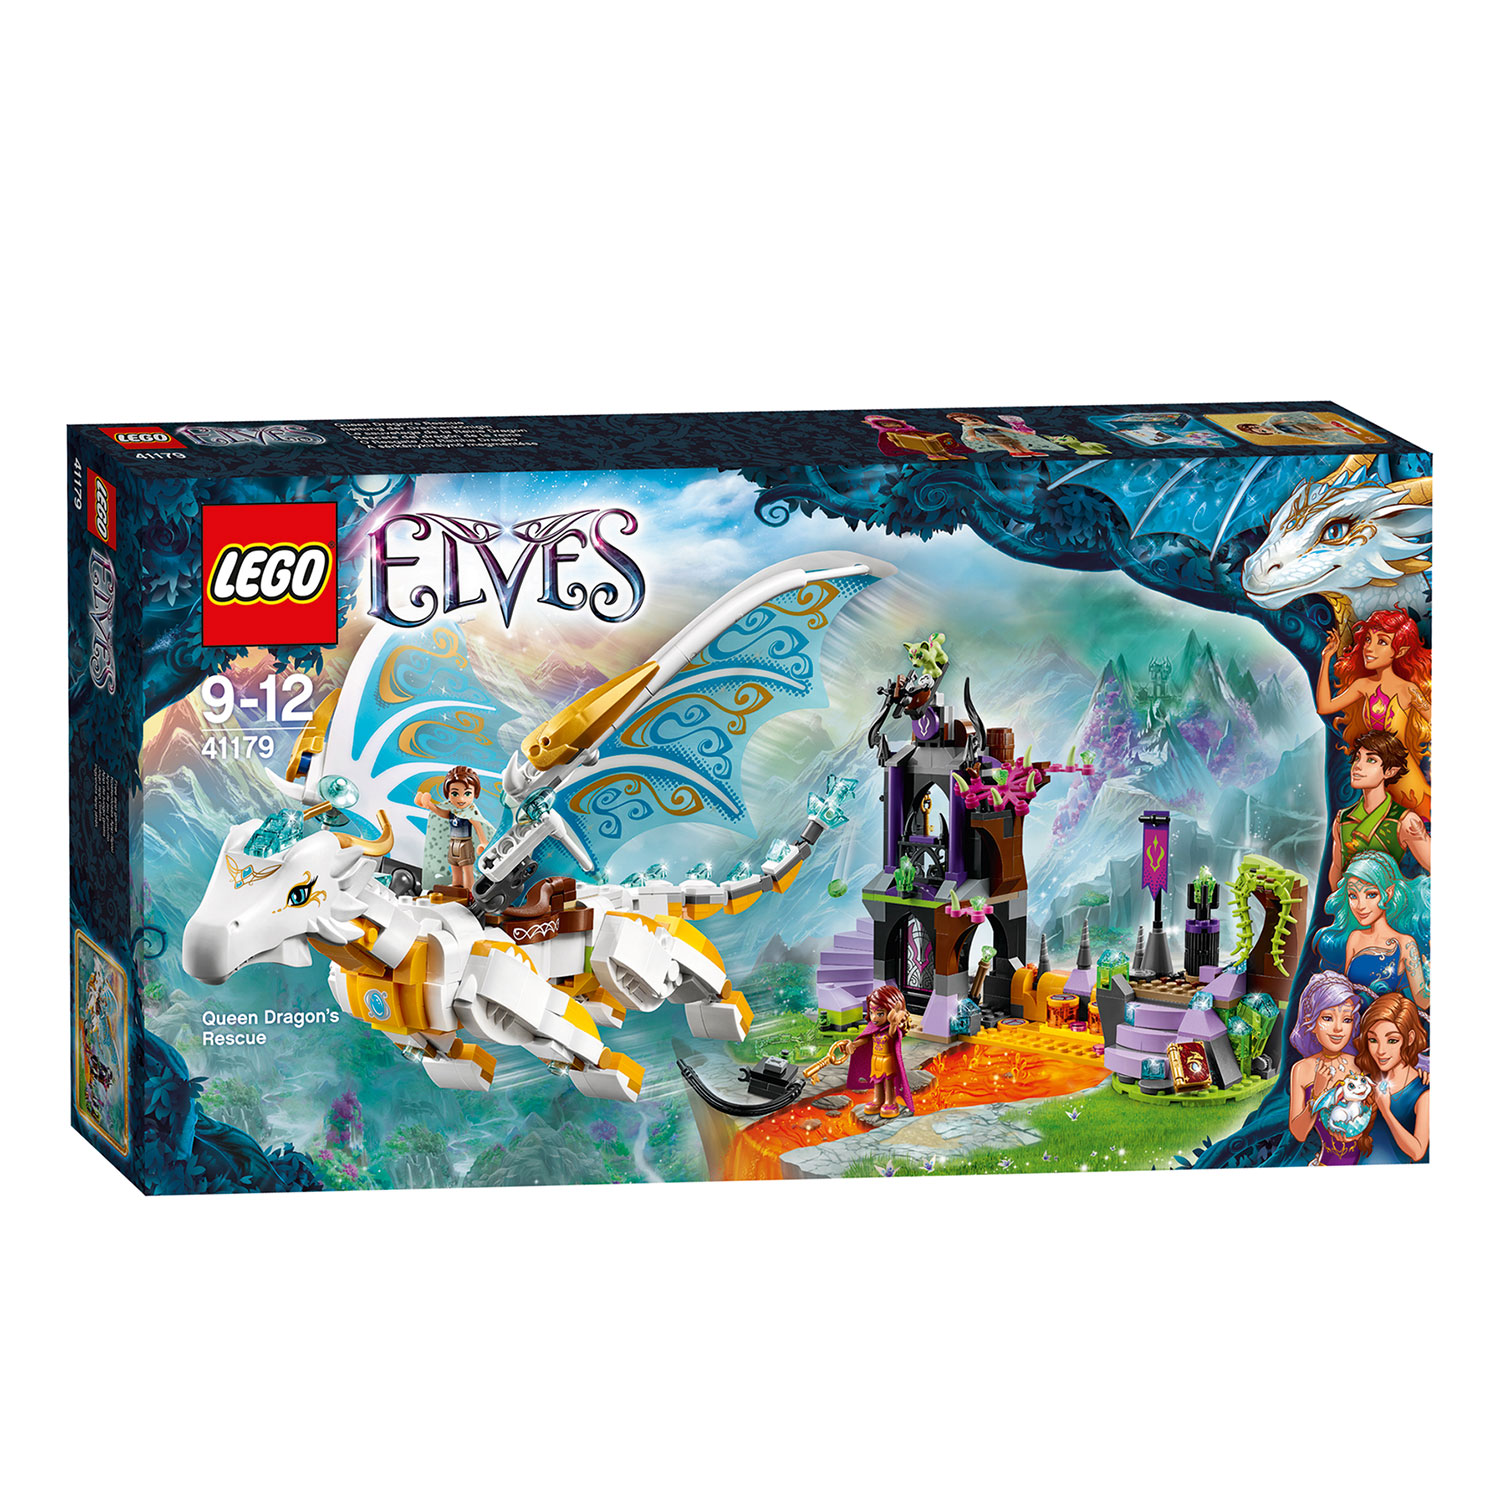 LEGO Elves 41179 Koninginnendraak Redding